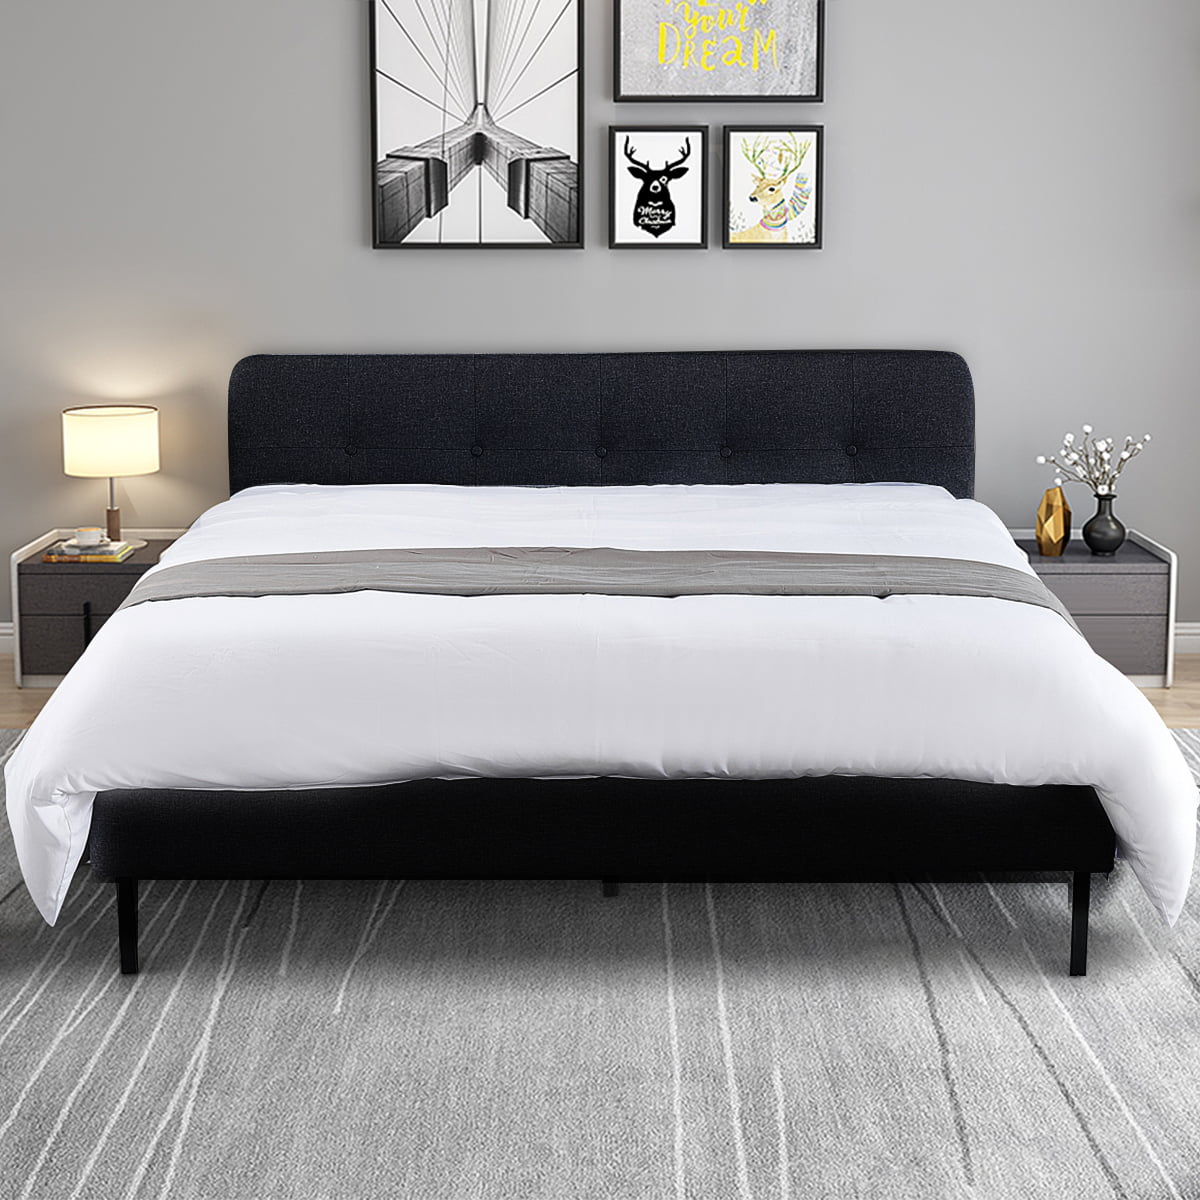 Elegiantinc Platform Bed Queen, How To Tighten A Metal Bed Frame